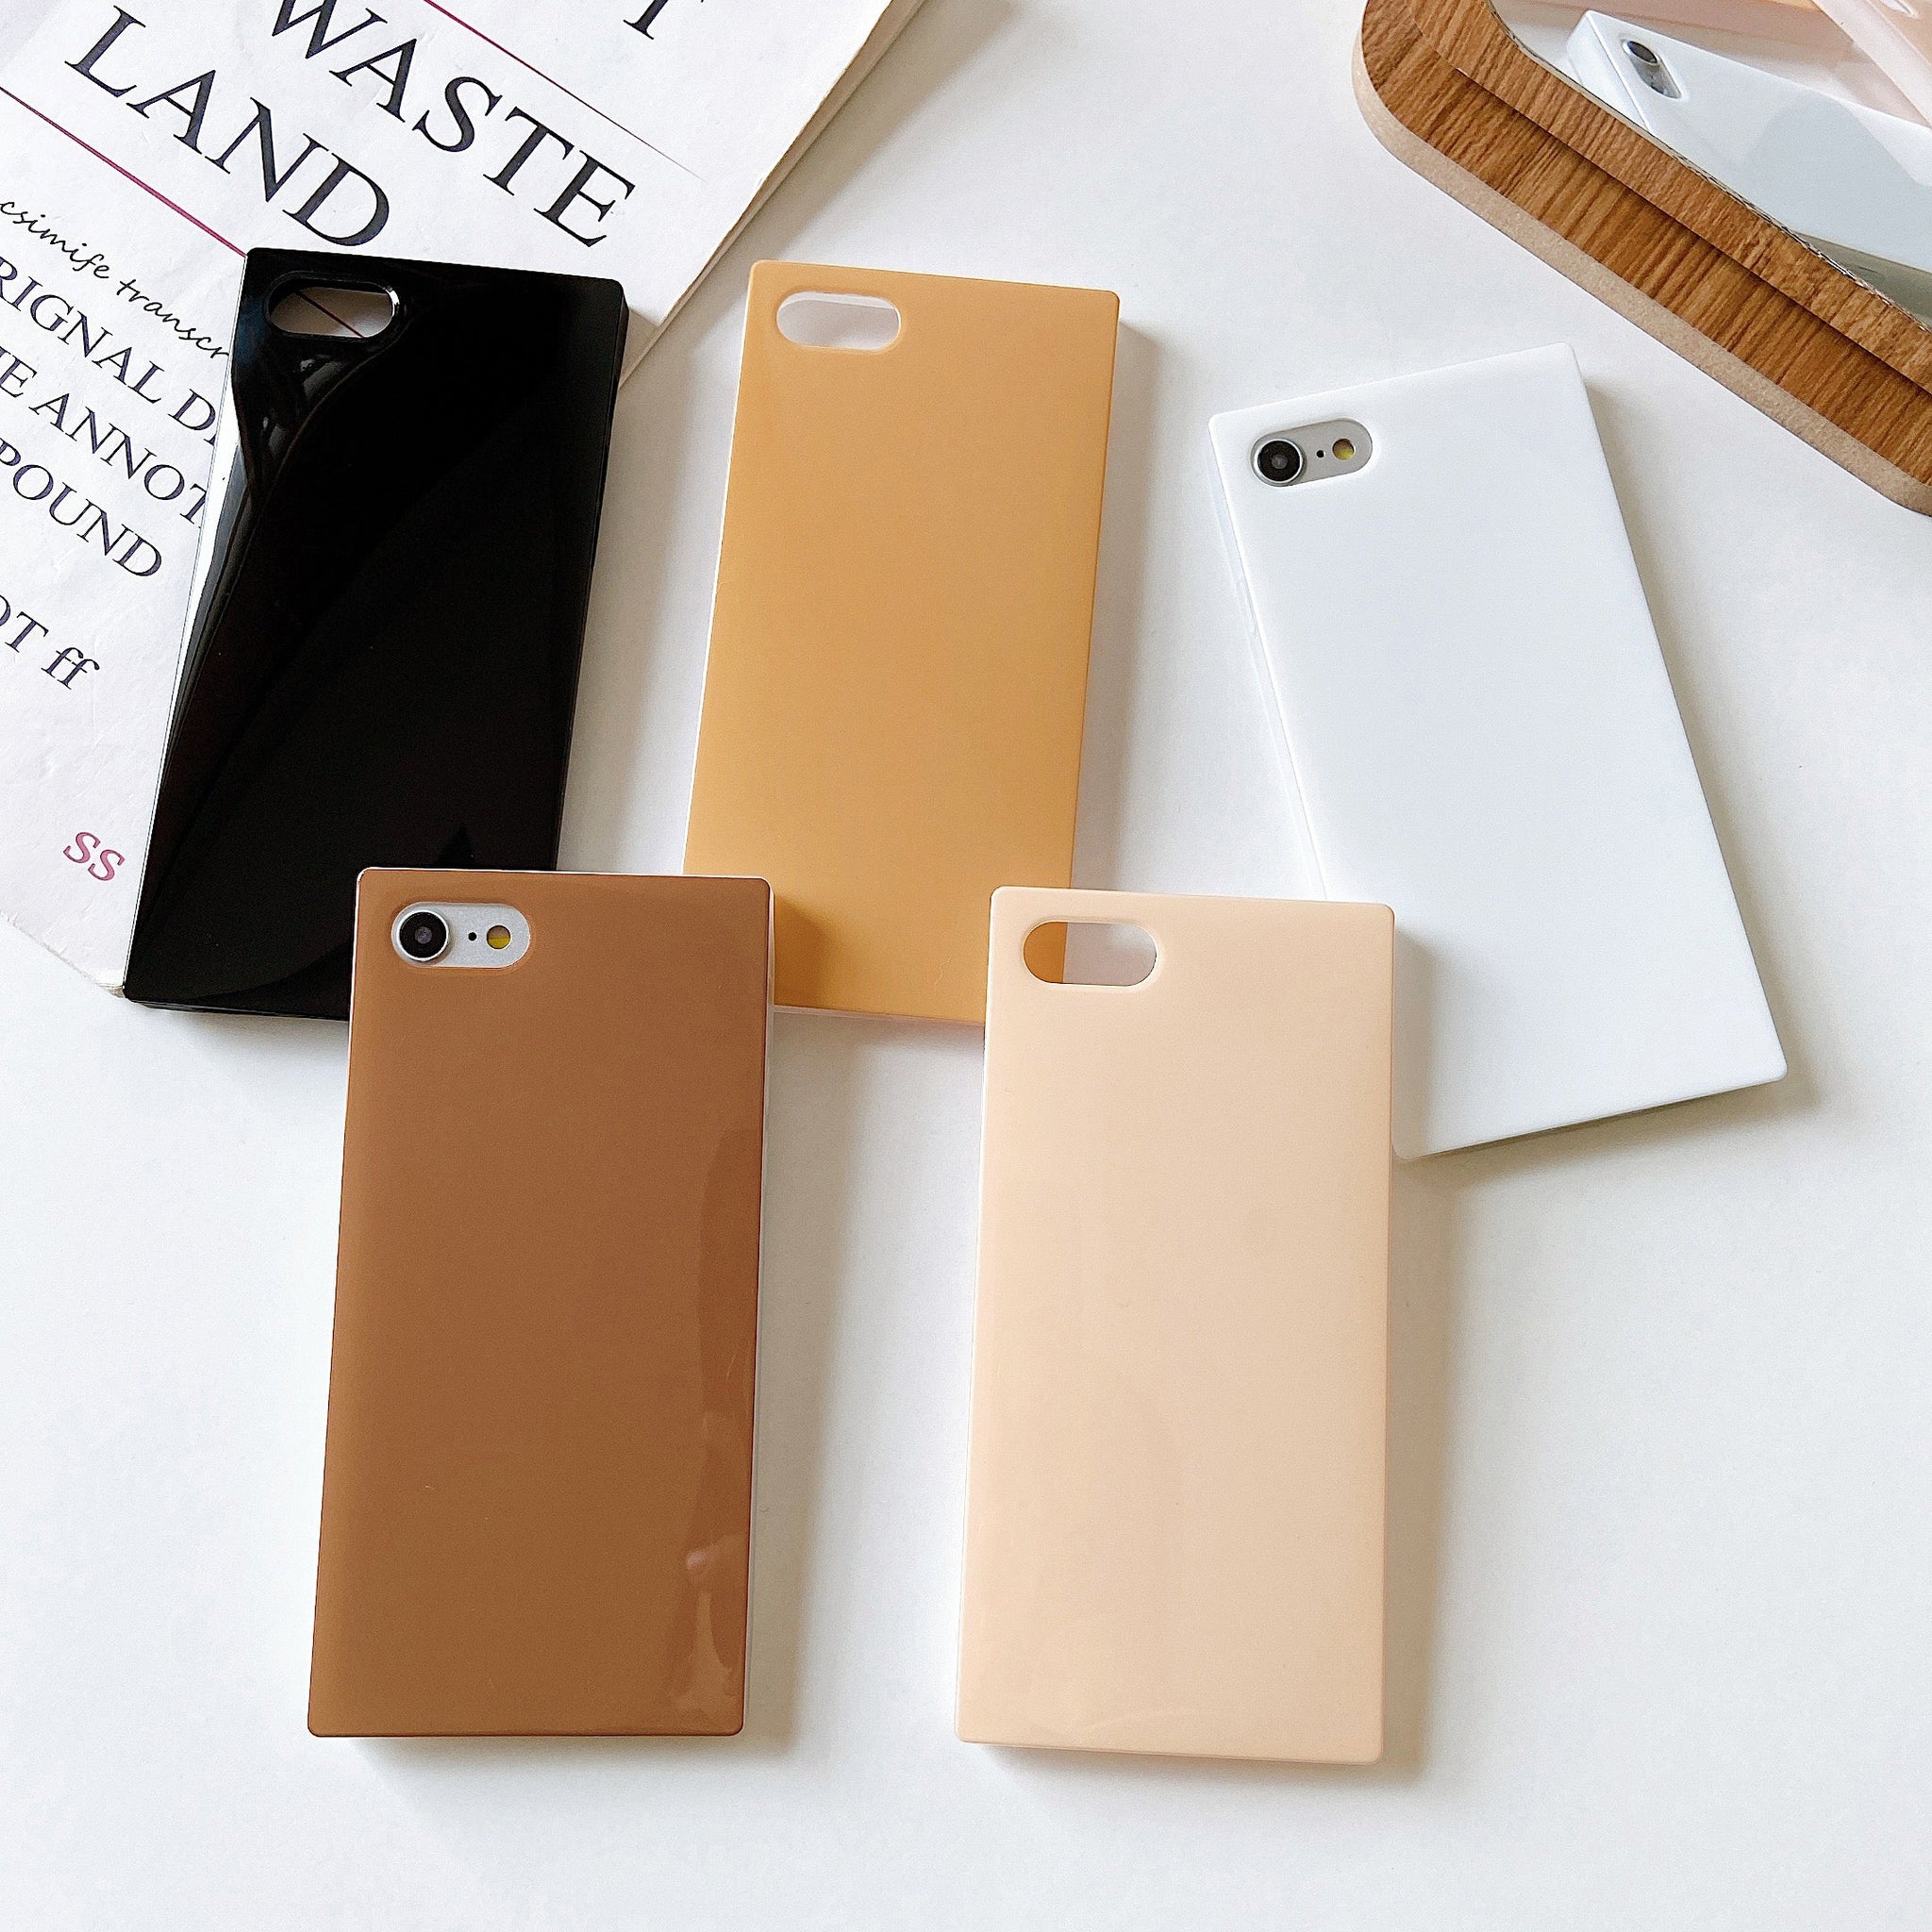 iPhone 8 Plus/7 Plus Case Square Neutral Plain Color (Nude)